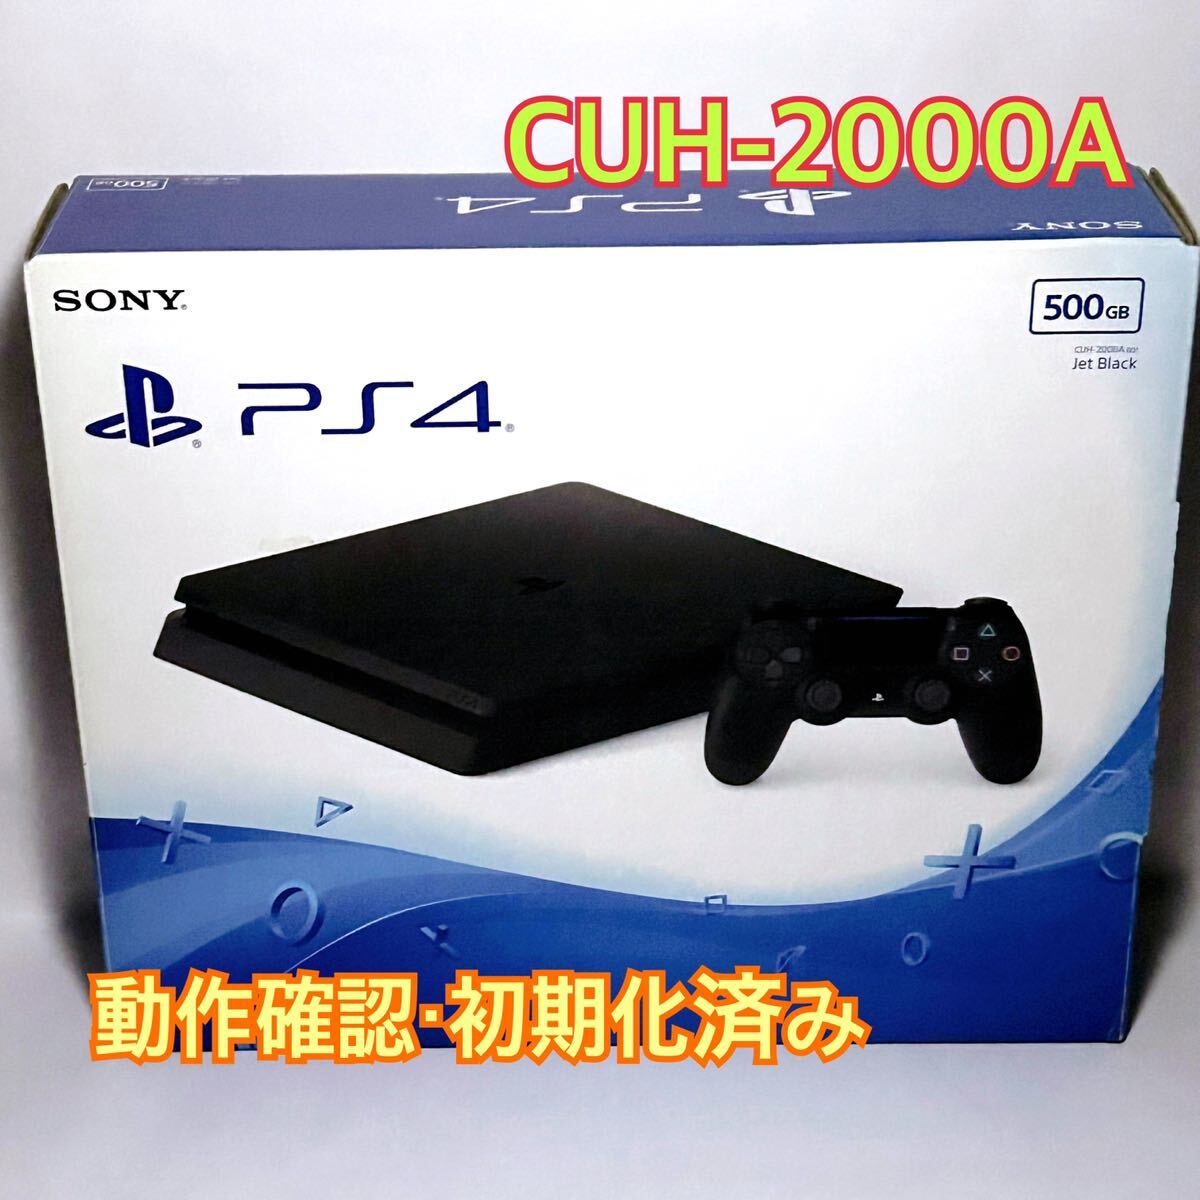 SONY PS4 CUH-2000A 500GB 本体+付属品 コントローラー欠品 /【Buyee 